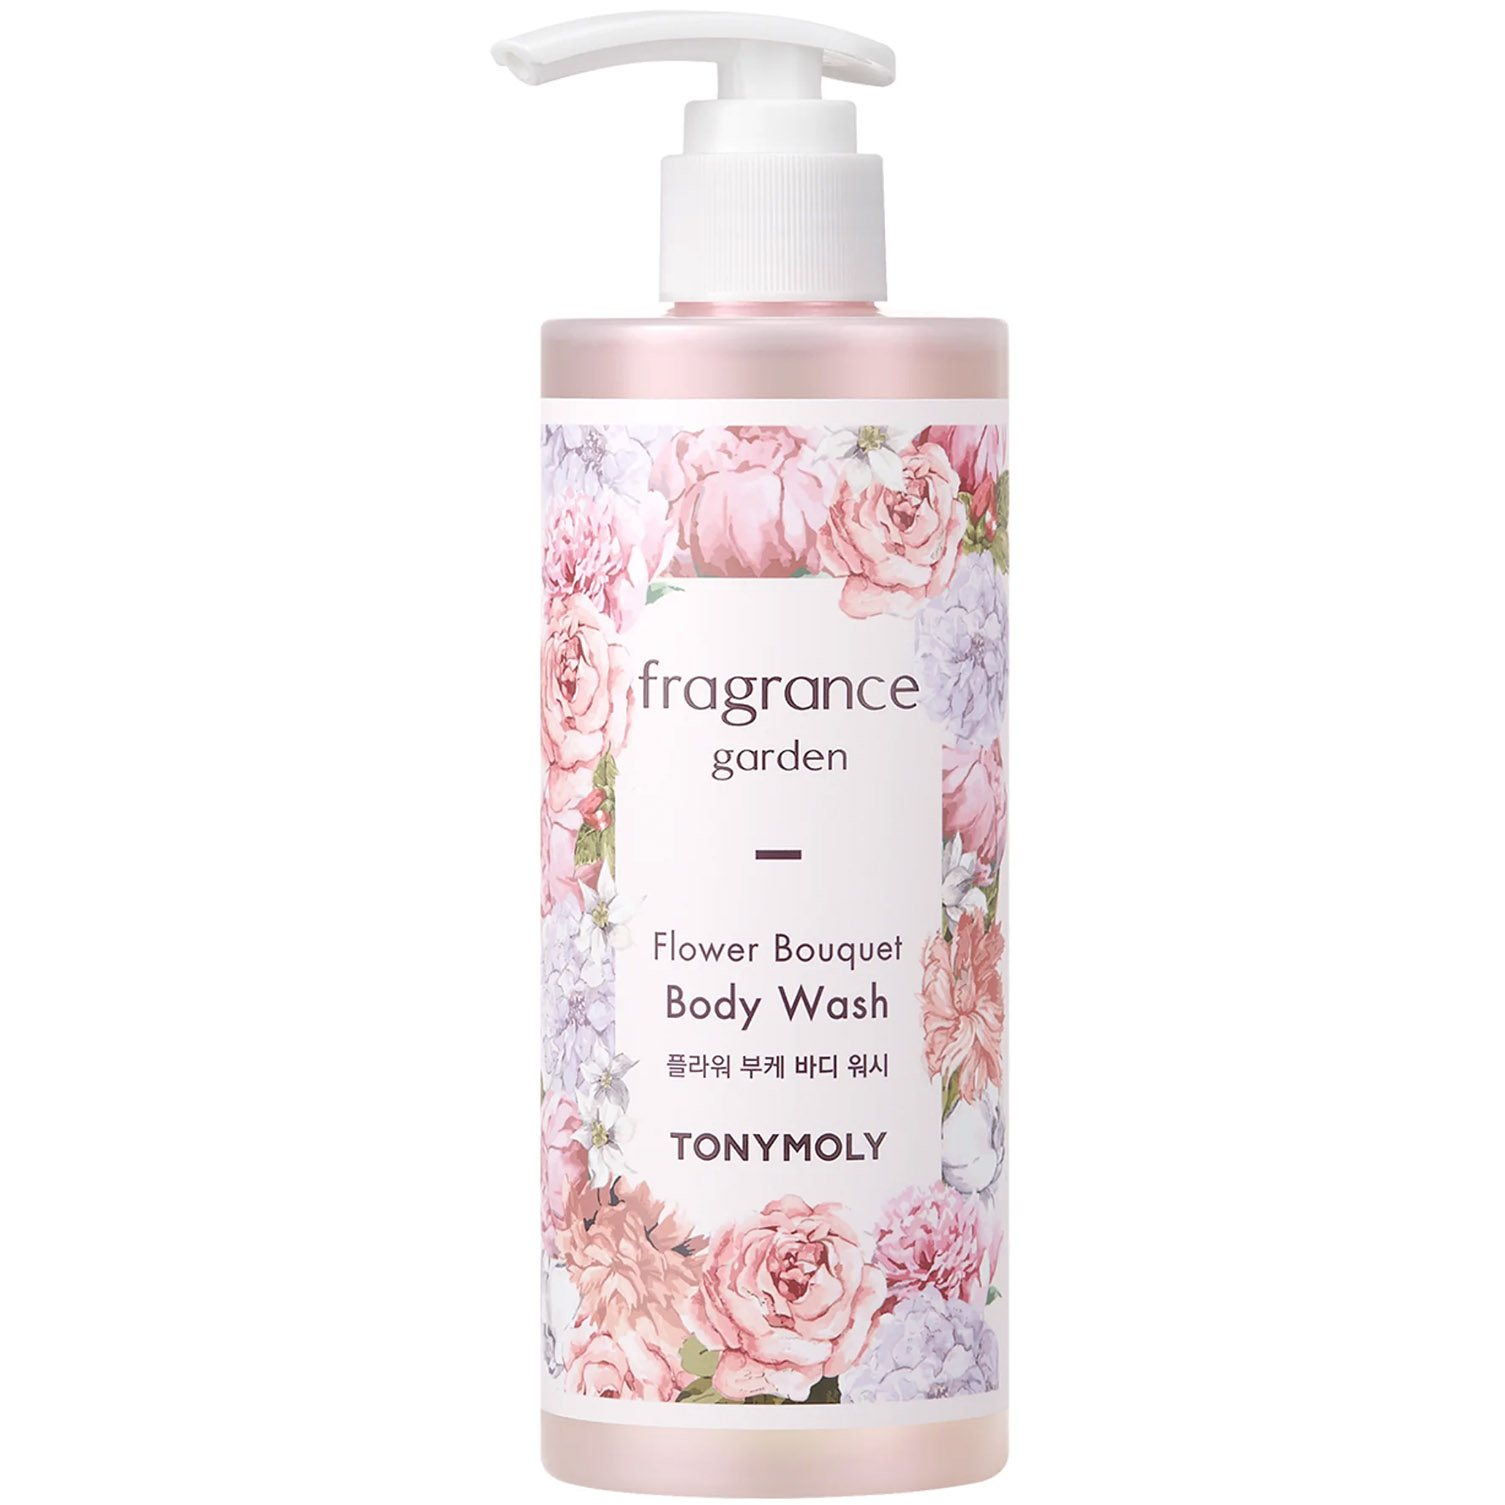 Гель для душа парфюмированный Tony Moly Fragrance Garden Flower Bouquet, 300 мл - фото 1